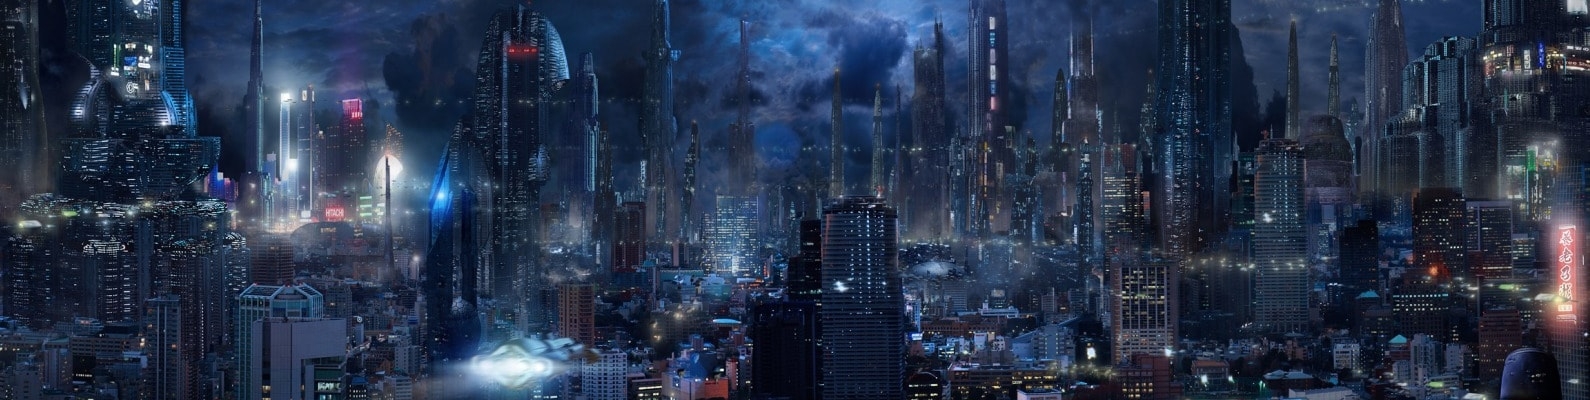 небоскребы, мегаполис, город, ночь, будущее, небо, фантастика, облака